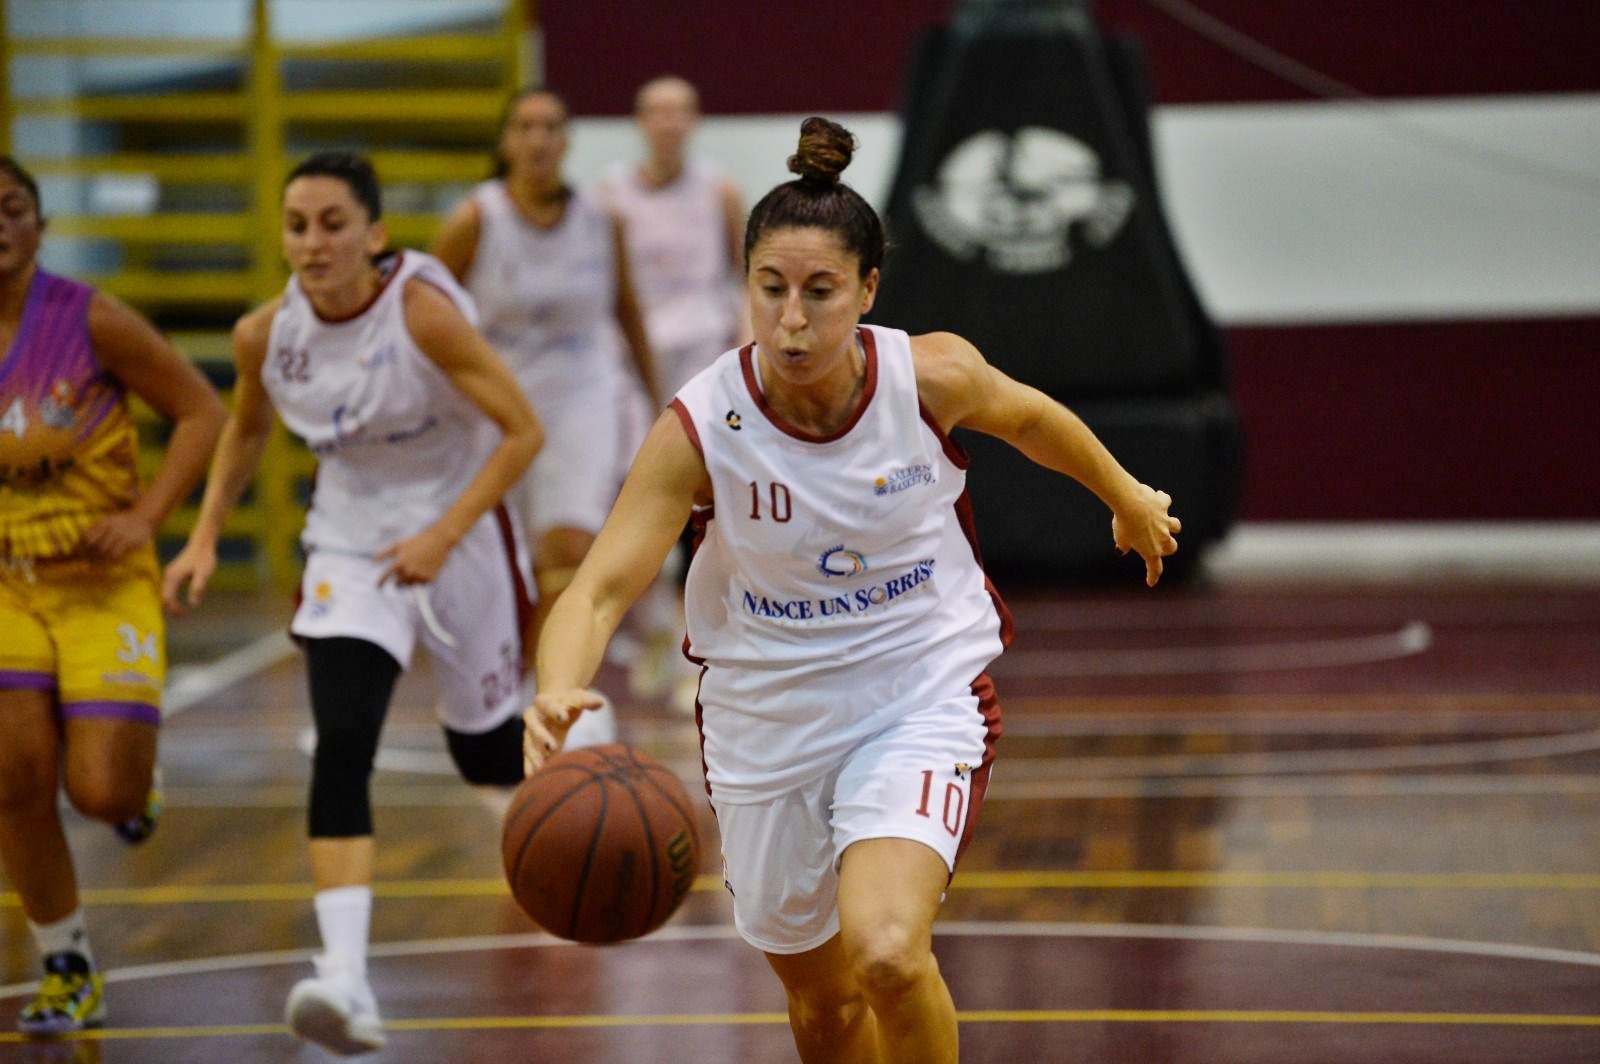 Regina Carosio, basquetbolista piquense, está jugando en Italia, después de ascender con un equipo en España